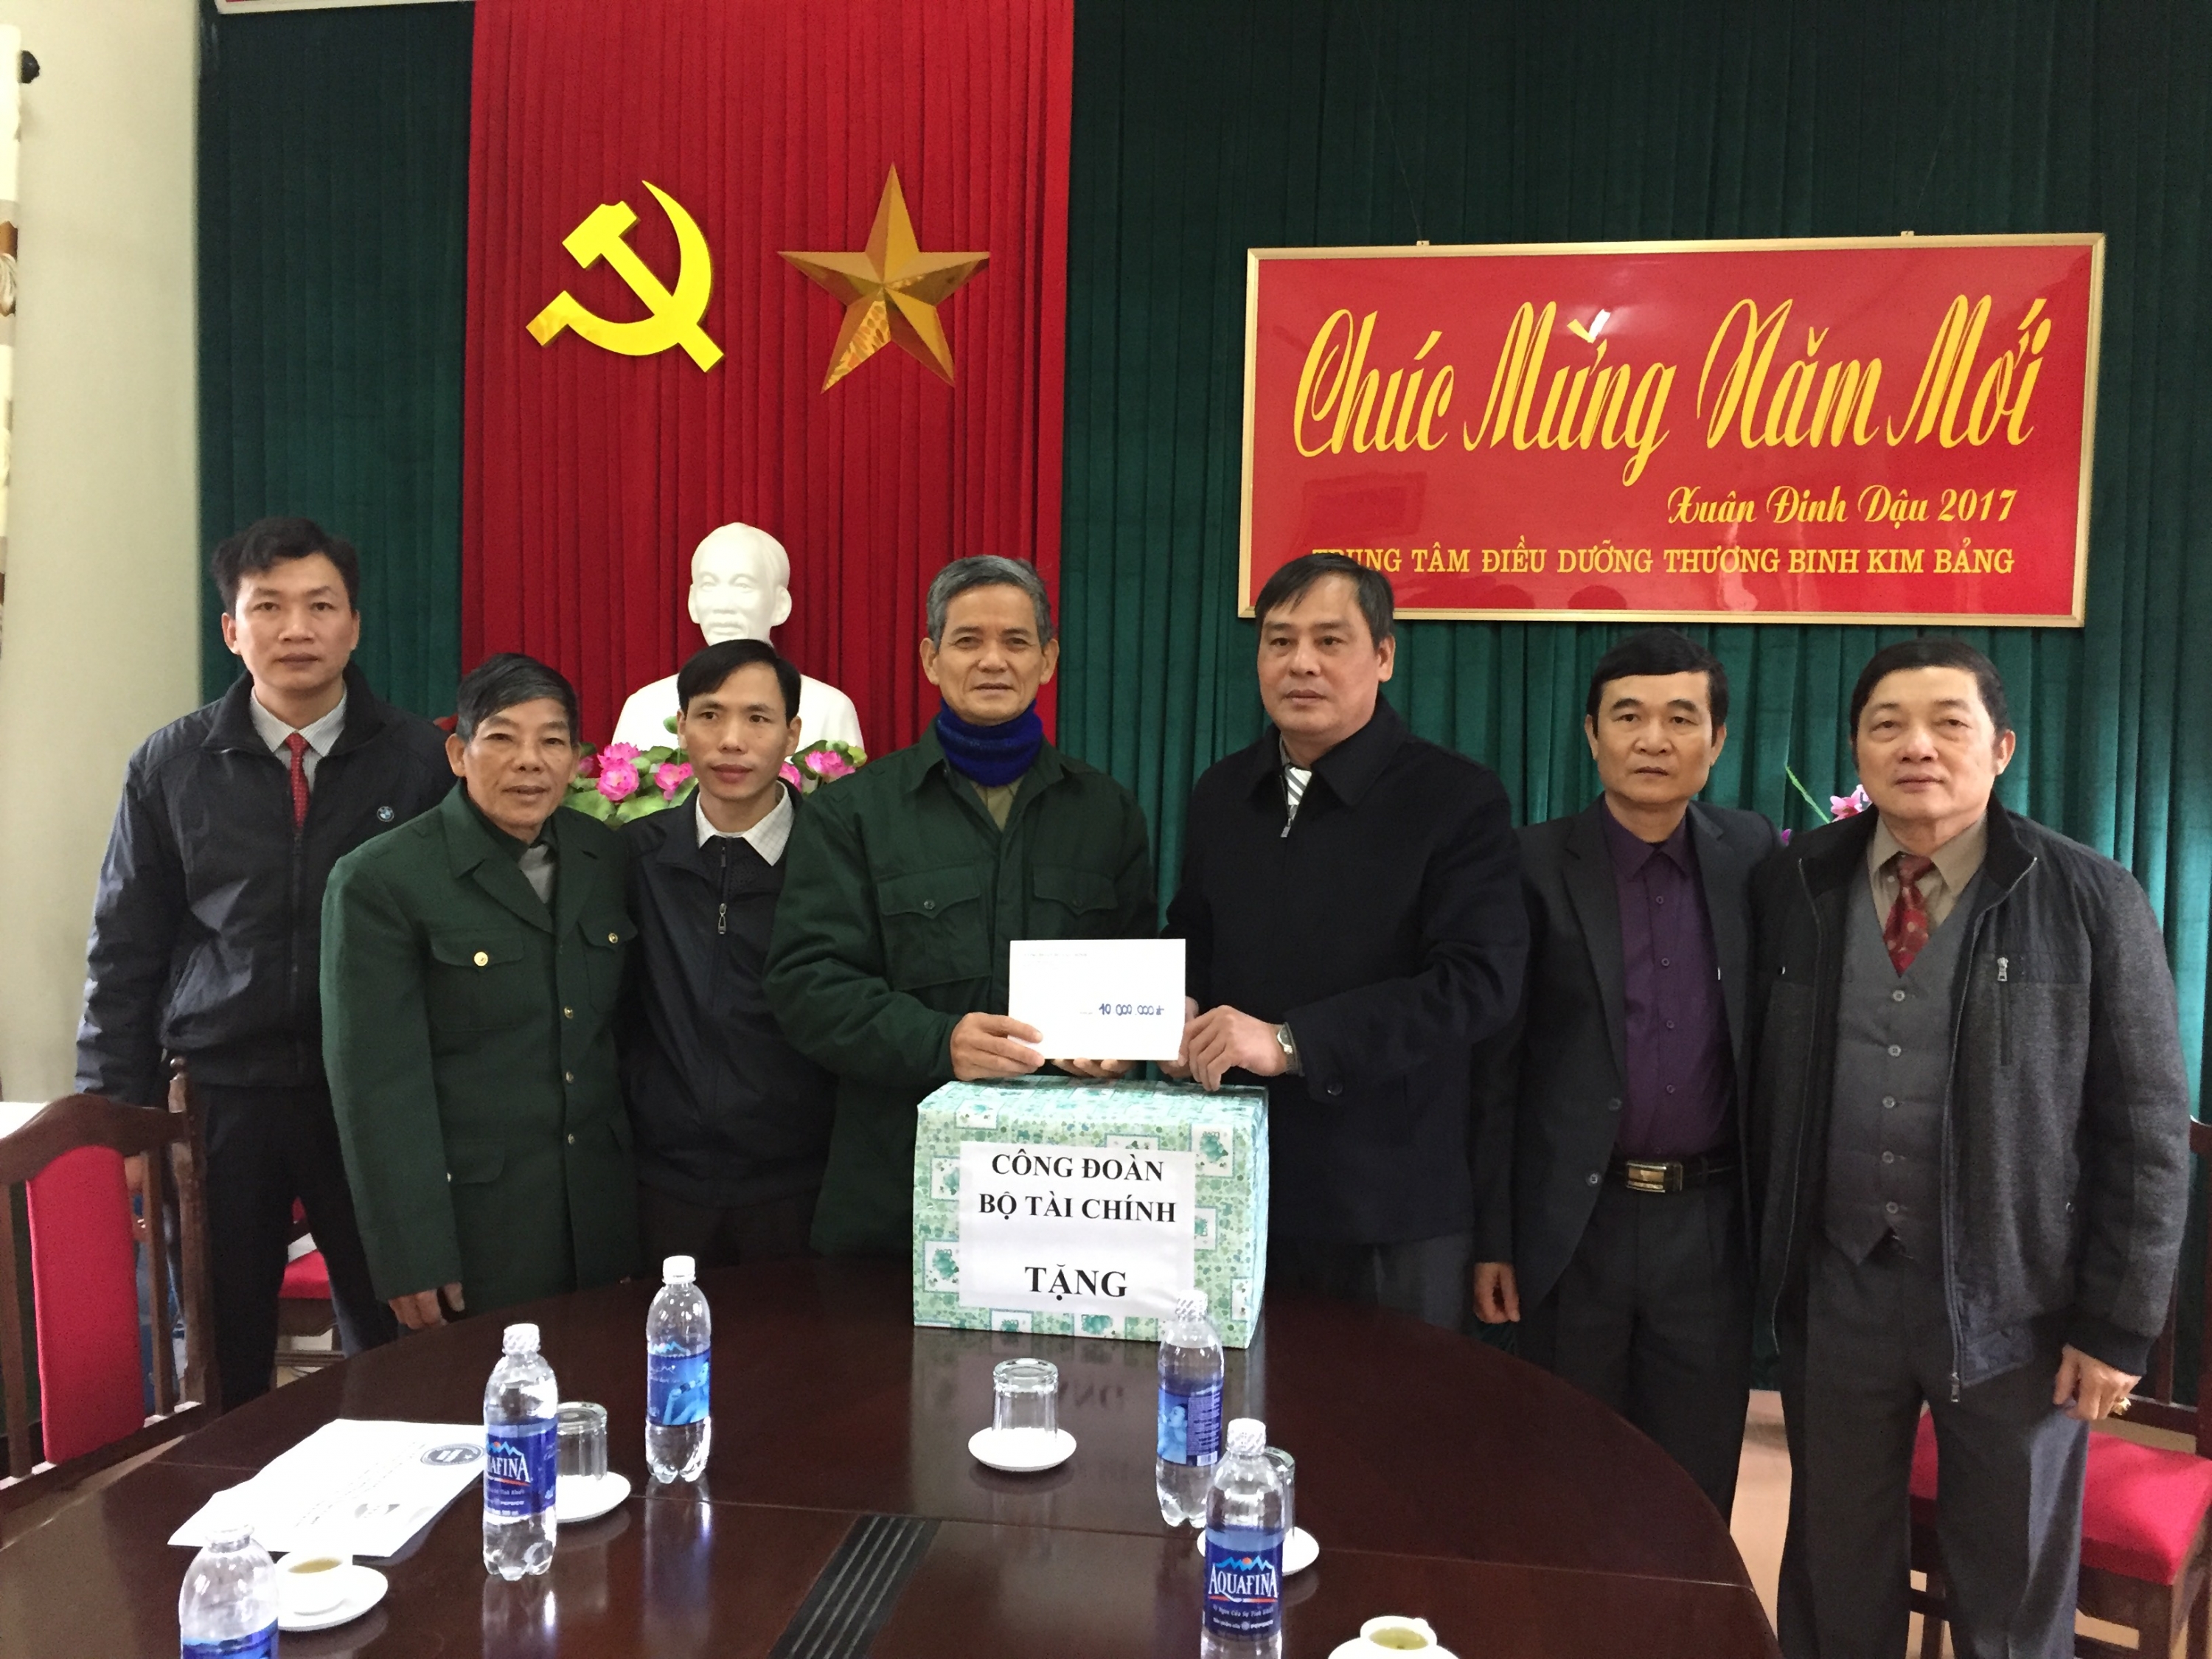 Công đoàn Bộ Tài chính thăm và tặng quà Trung tâm Điều dưỡng Thương binh Kim Bảng, Hà Nam